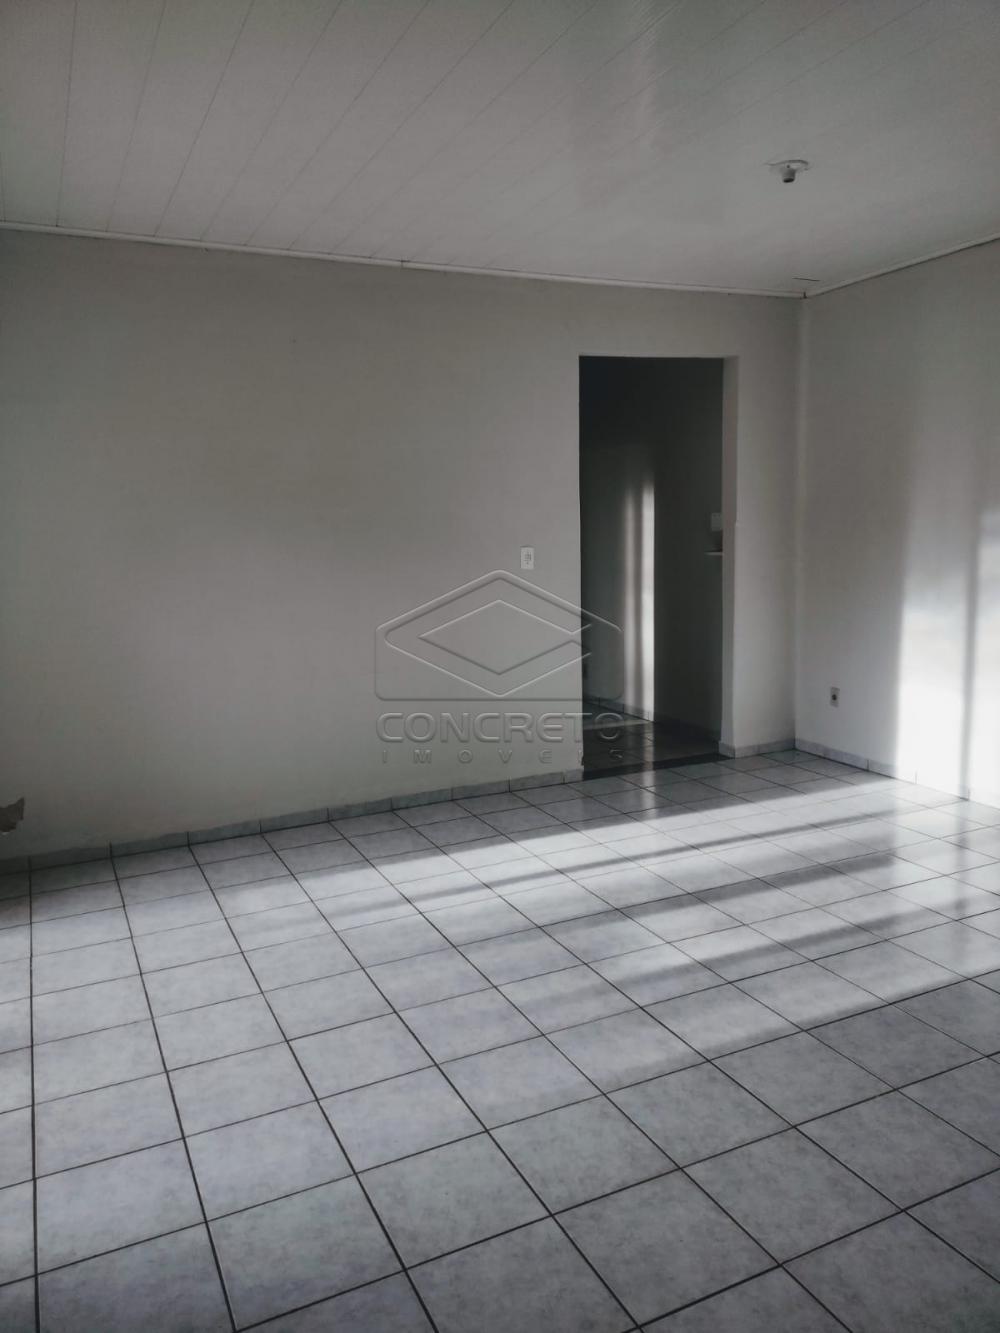 Alugar Casa / Residencia em Bauru R$ 1.000,00 - Foto 5